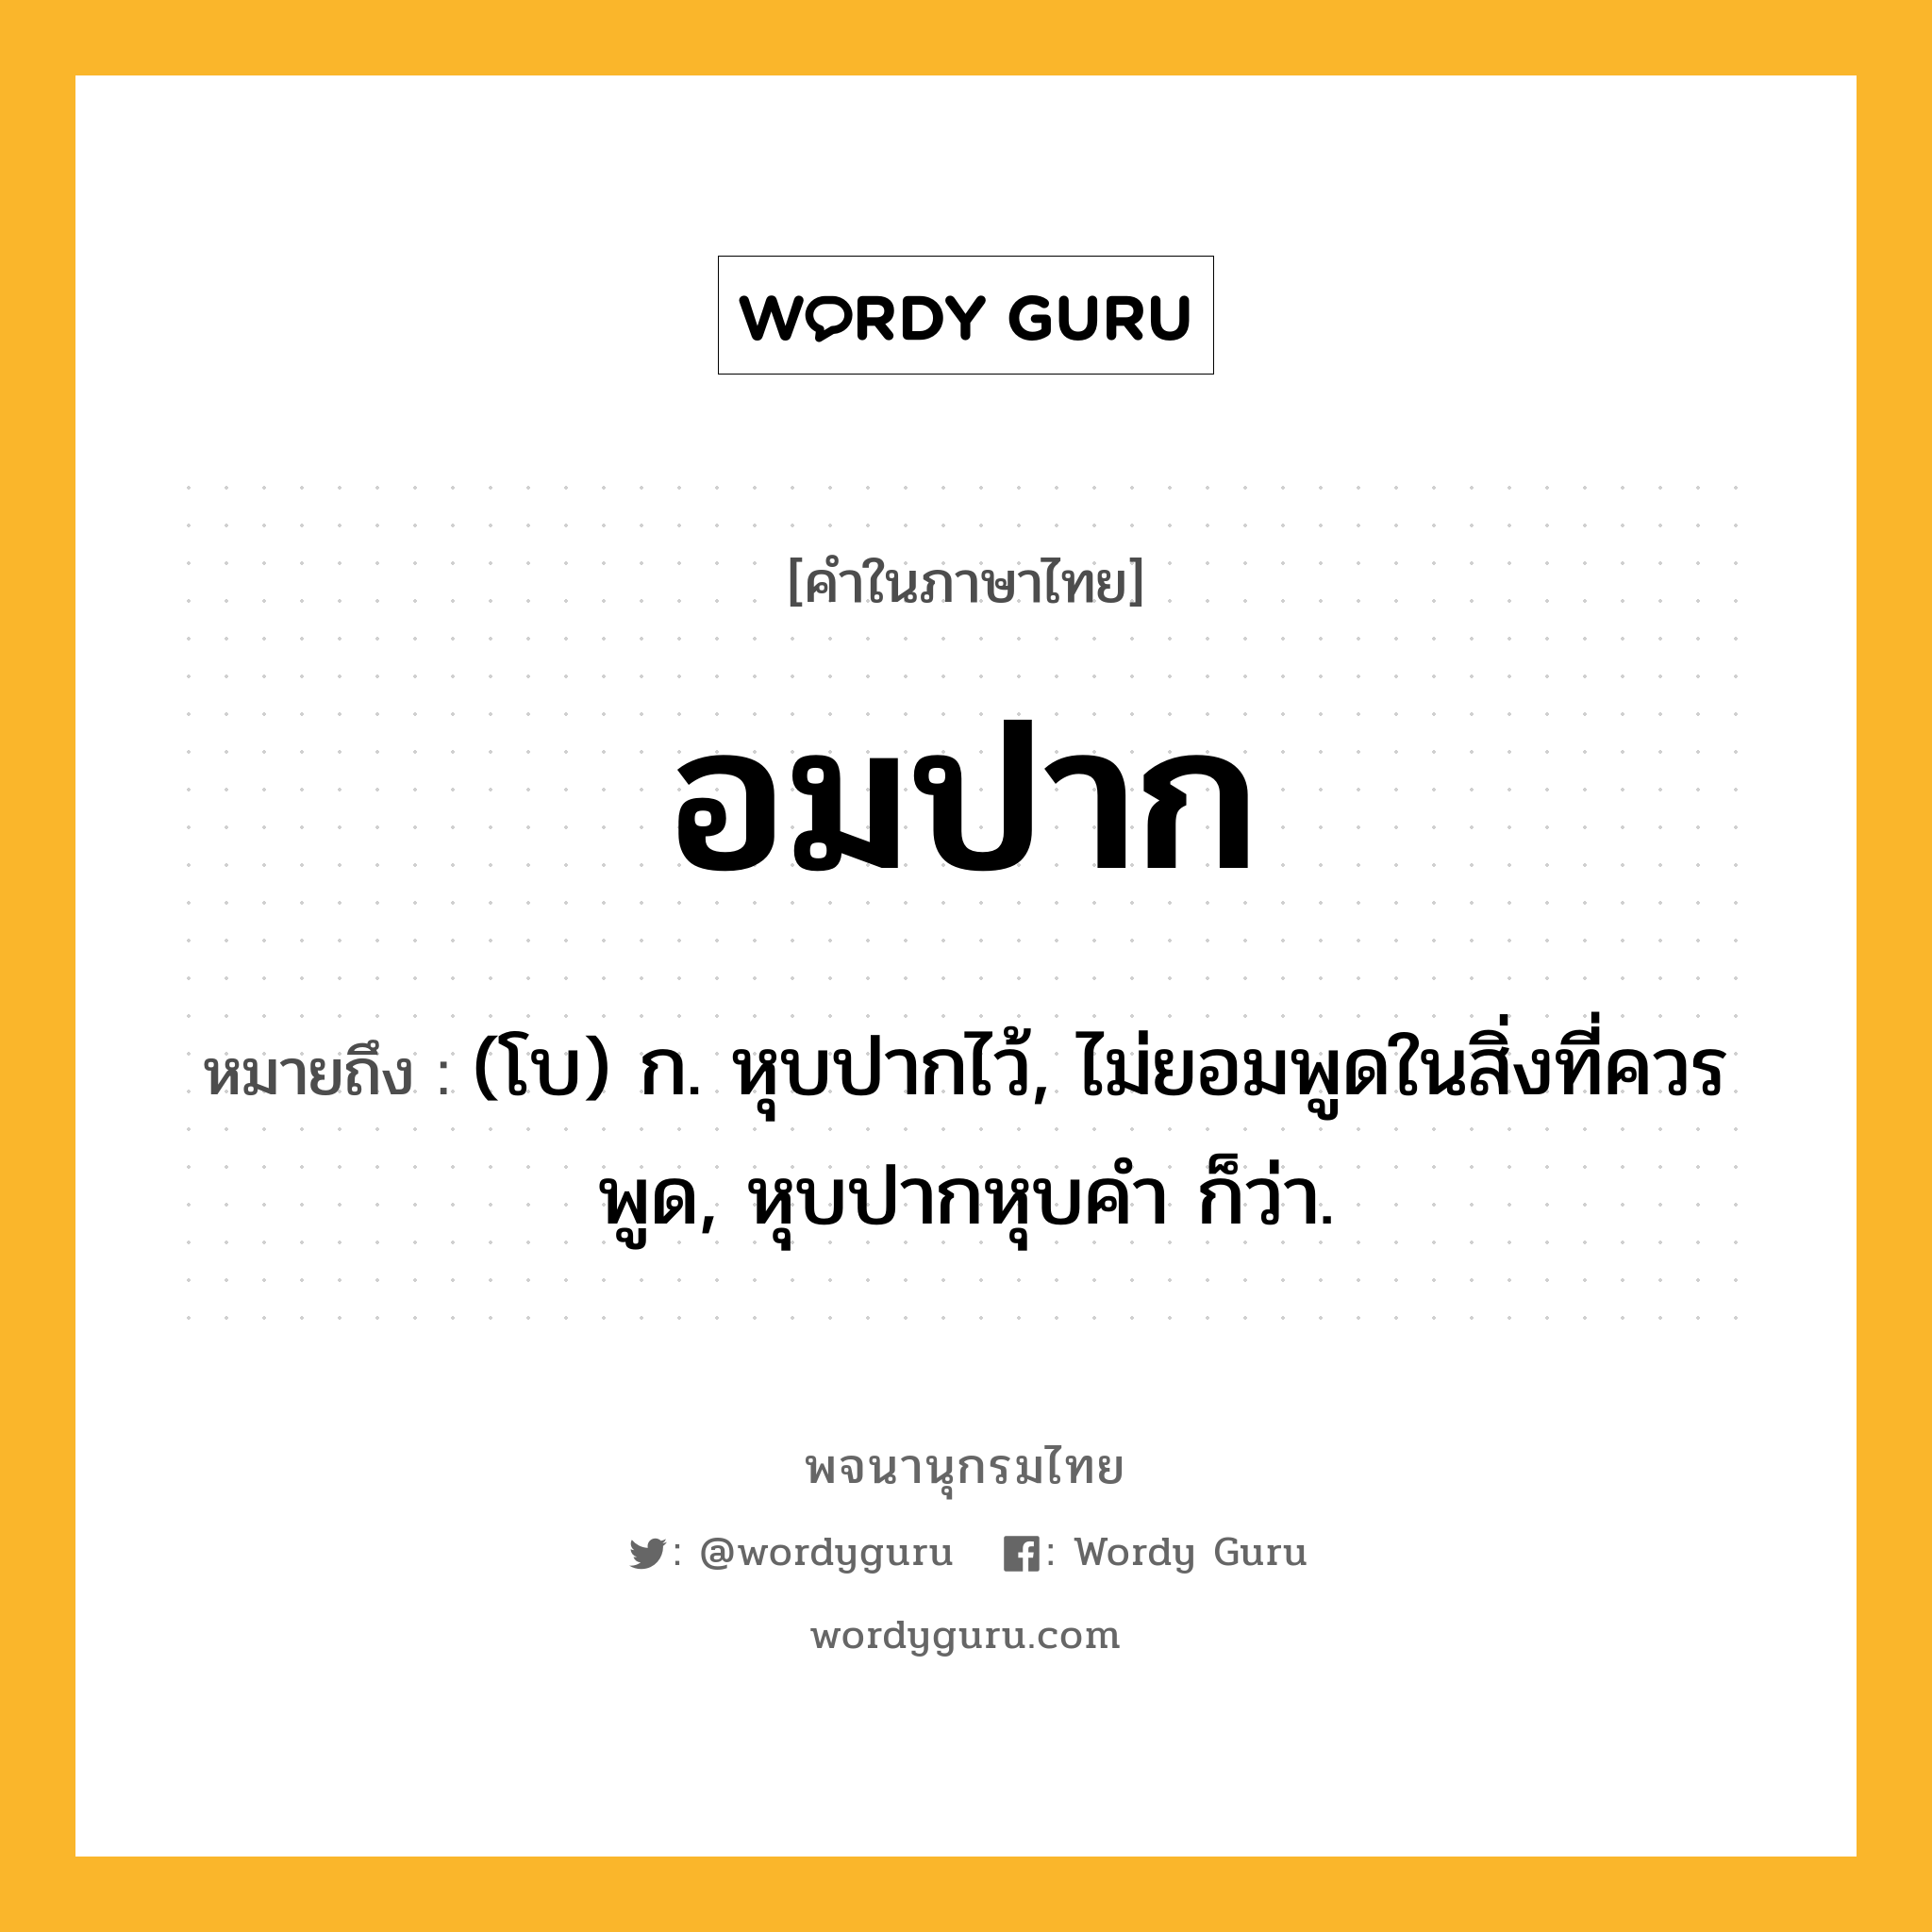 อมปาก ความหมาย หมายถึงอะไร?, คำในภาษาไทย อมปาก หมายถึง (โบ) ก. หุบปากไว้, ไม่ยอมพูดในสิ่งที่ควรพูด, หุบปากหุบคํา ก็ว่า.